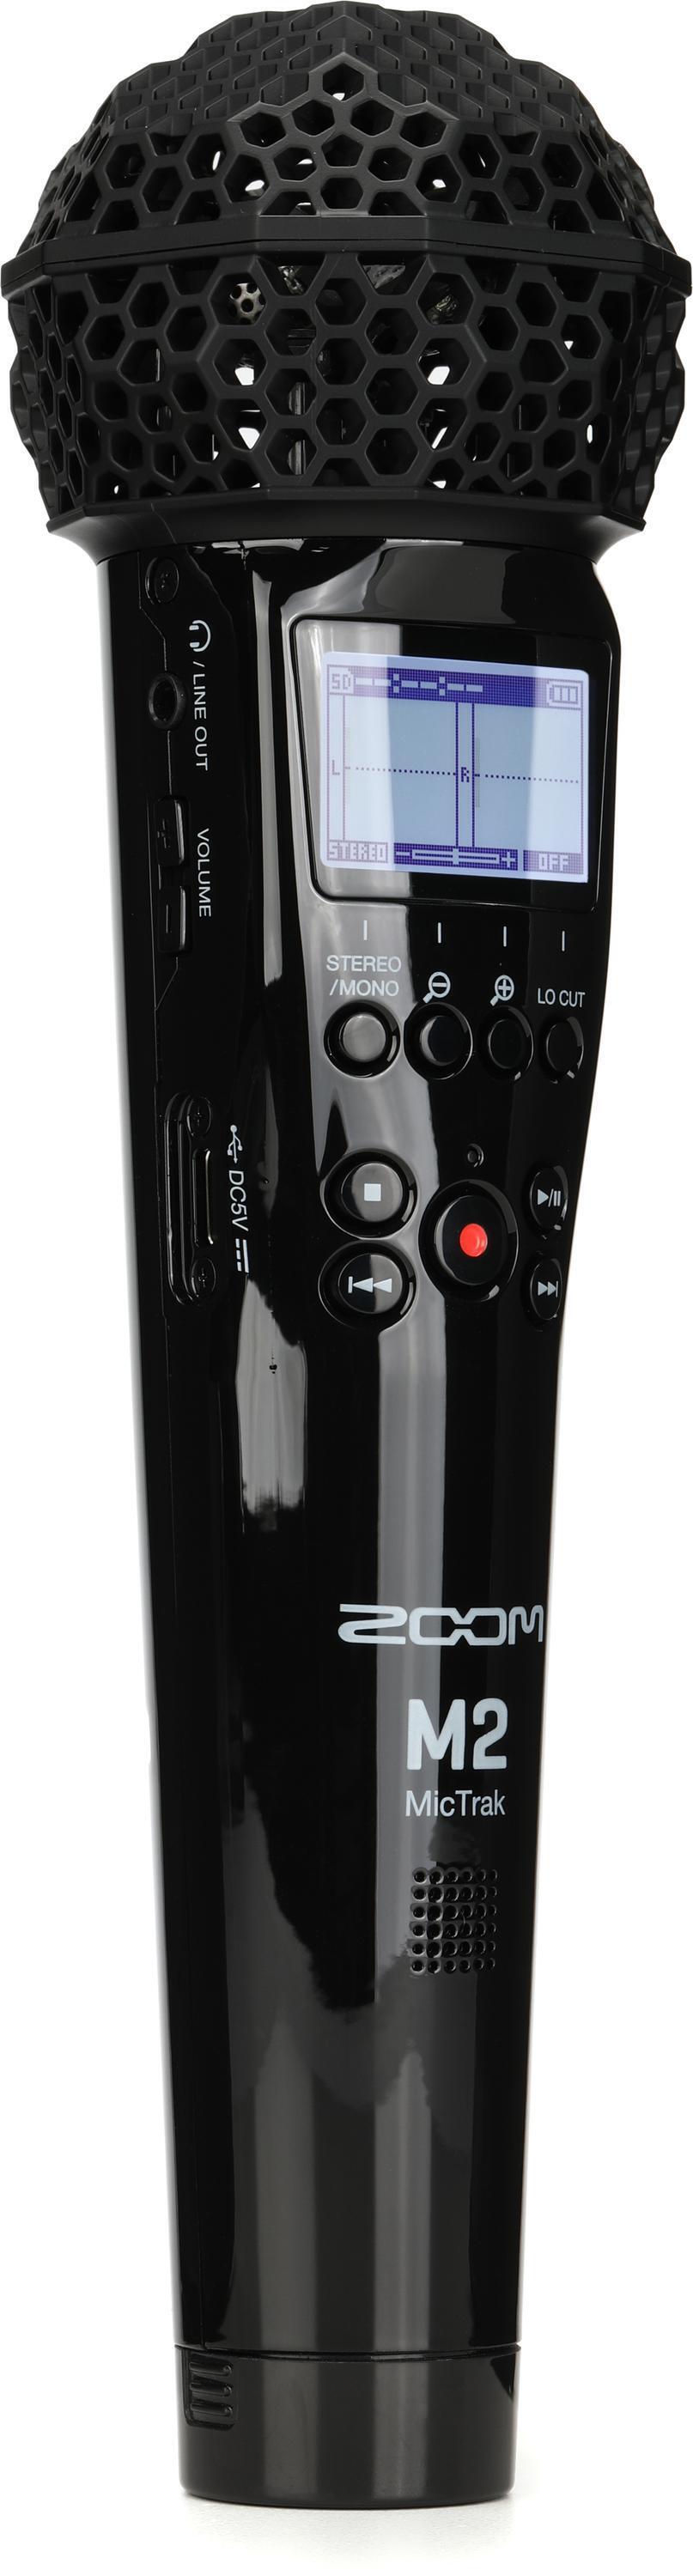 Zoom M2 MicTrak 2-channel 32-bit Portable Recorder